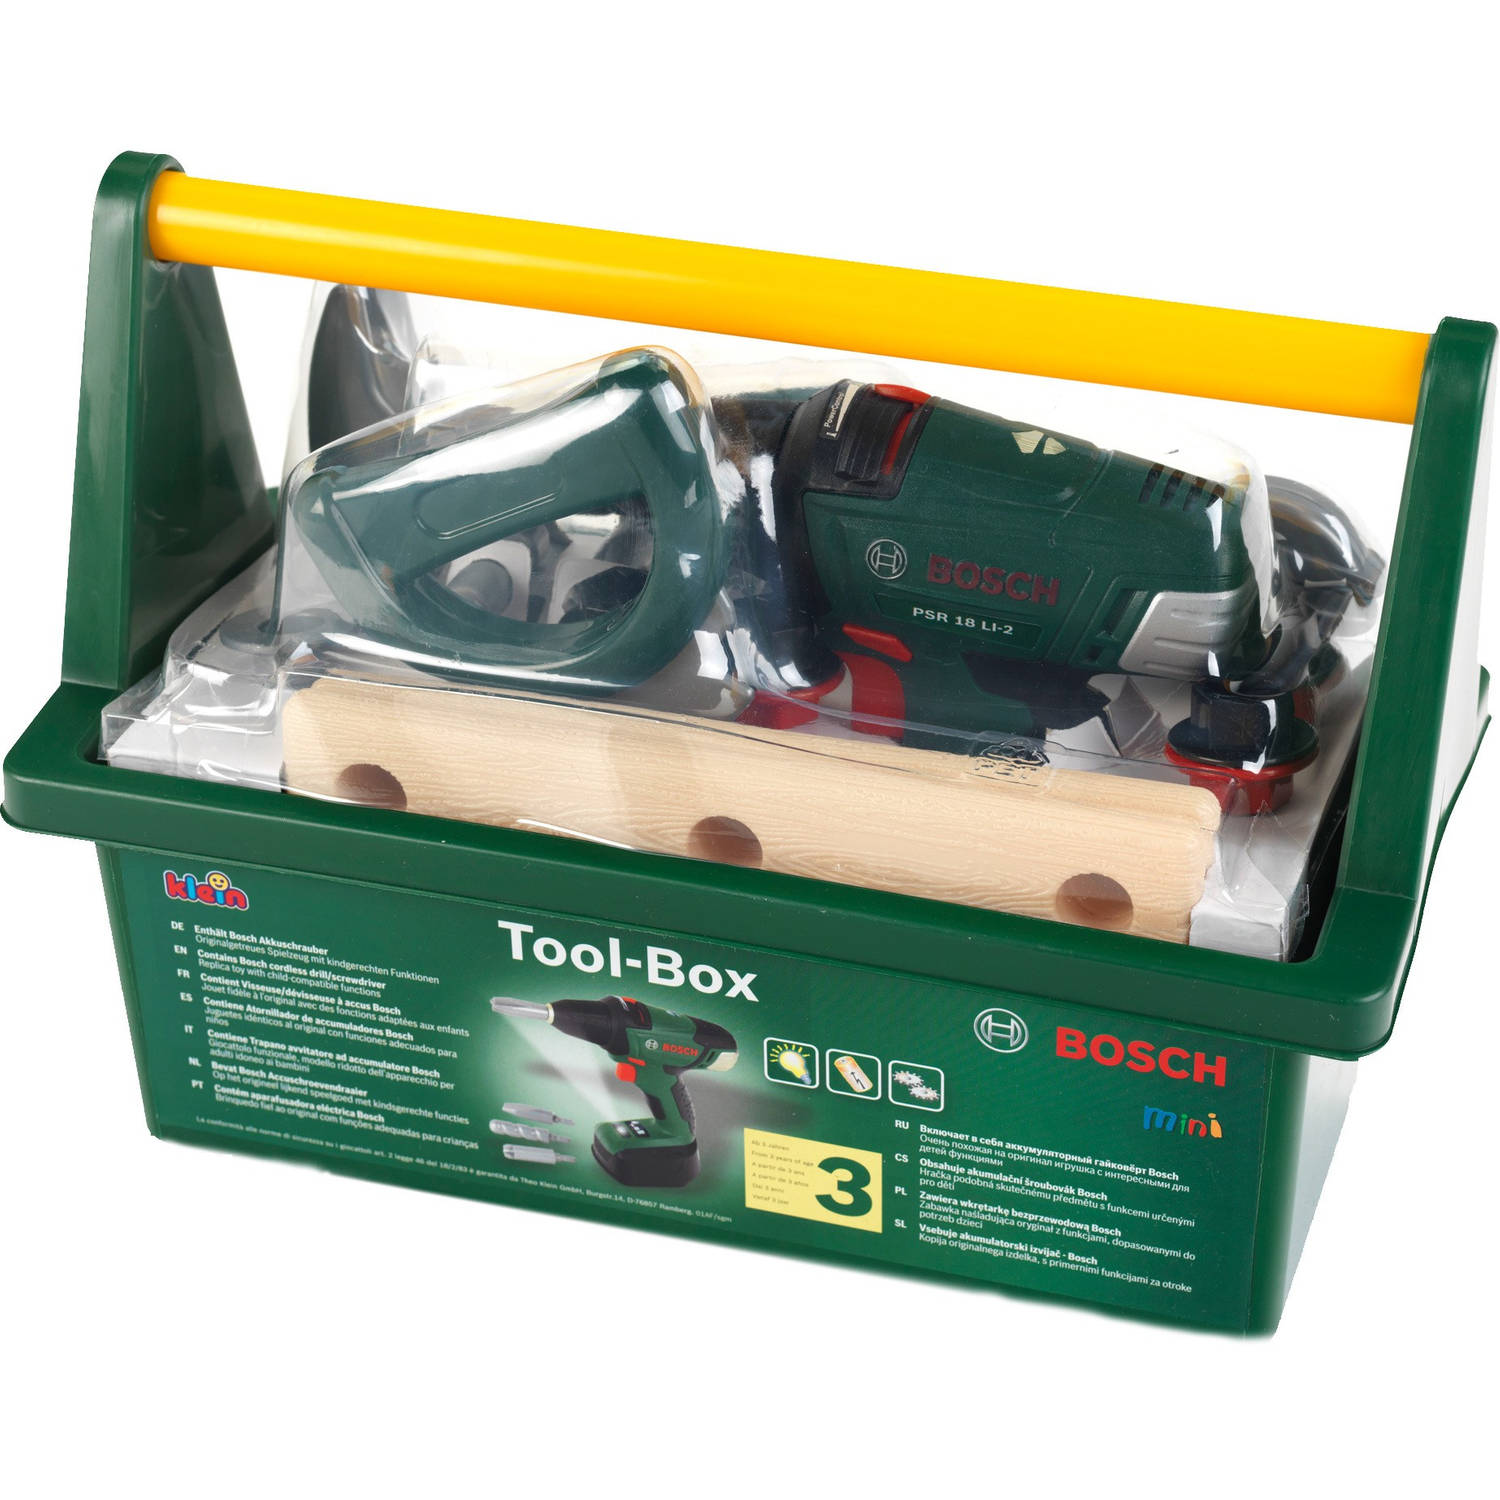 elk Afleiden communicatie Bosch speelgoed gereedschapskist met accuboormachine | Blokker